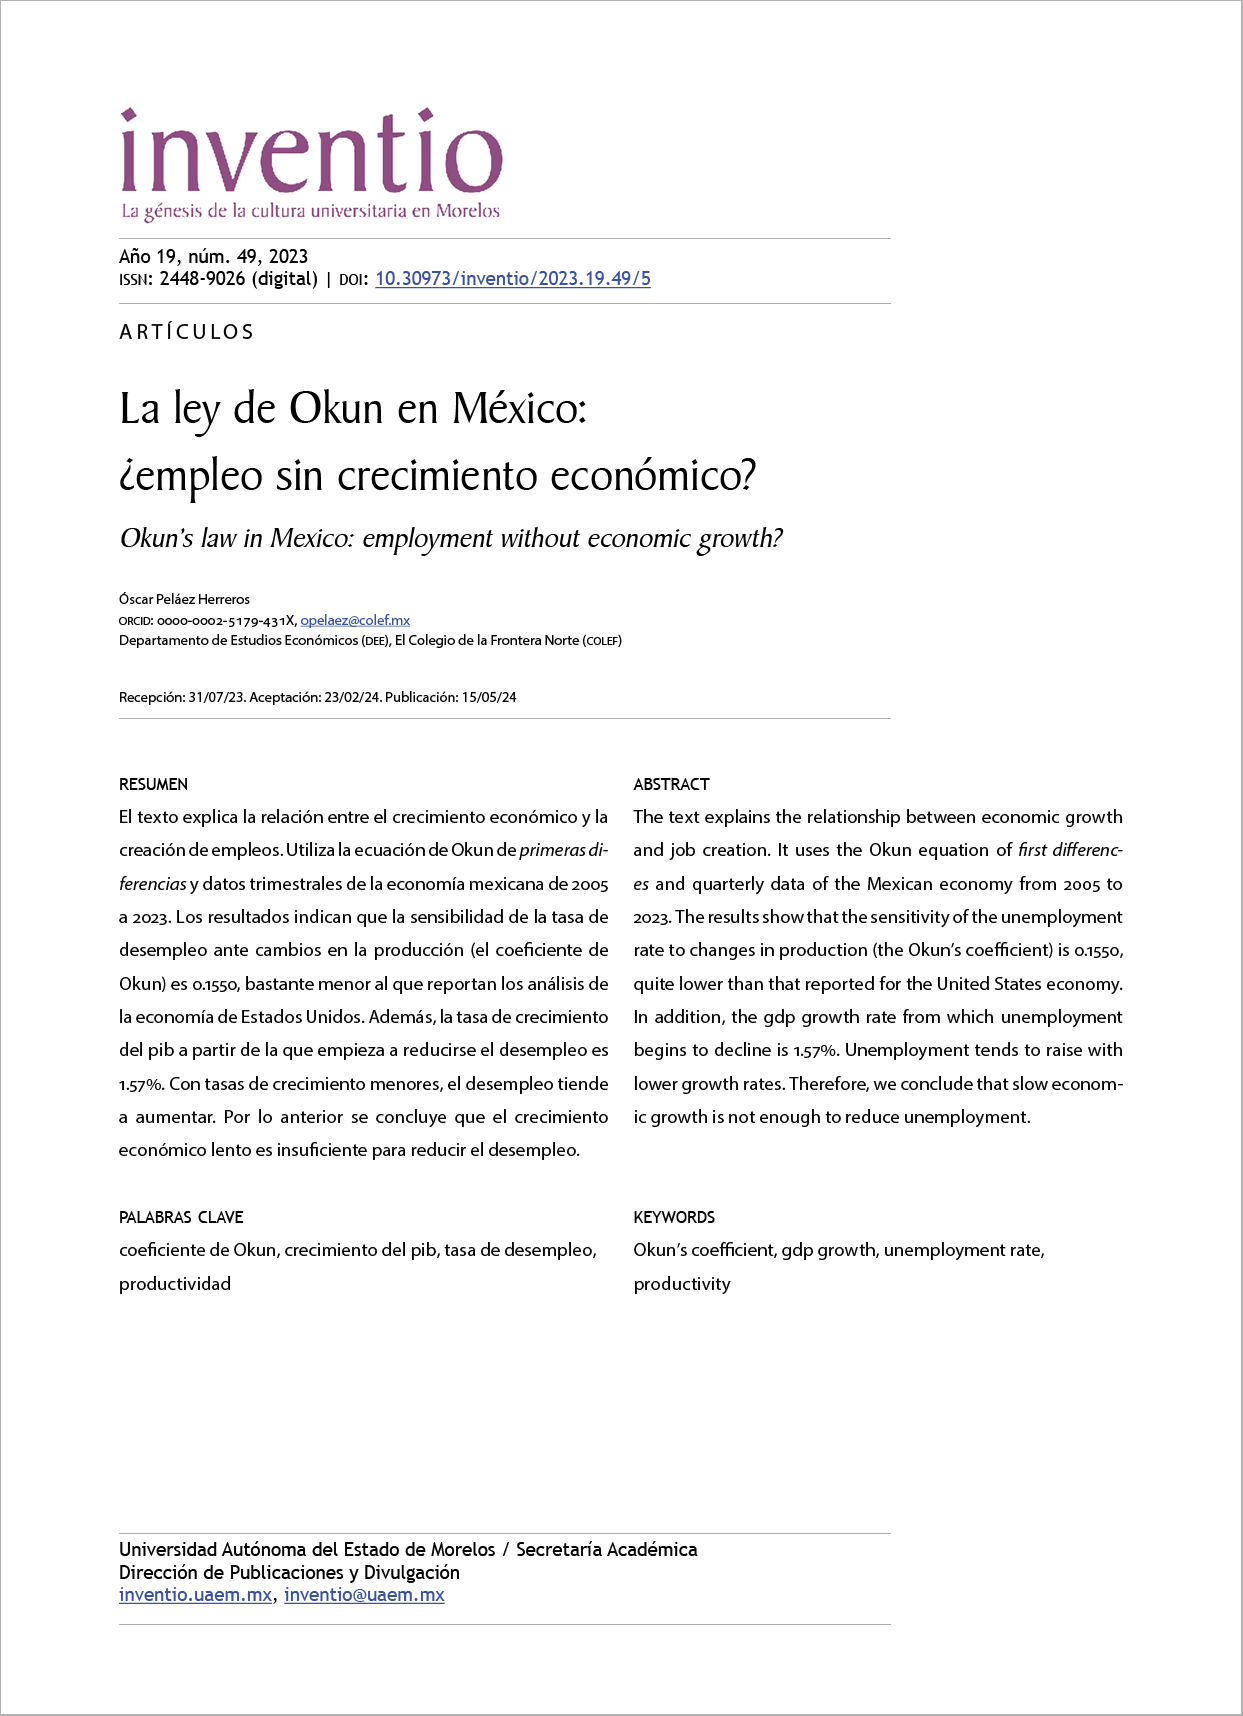 La ley de Okun en México: ¿empleo sin crecimiento económico?